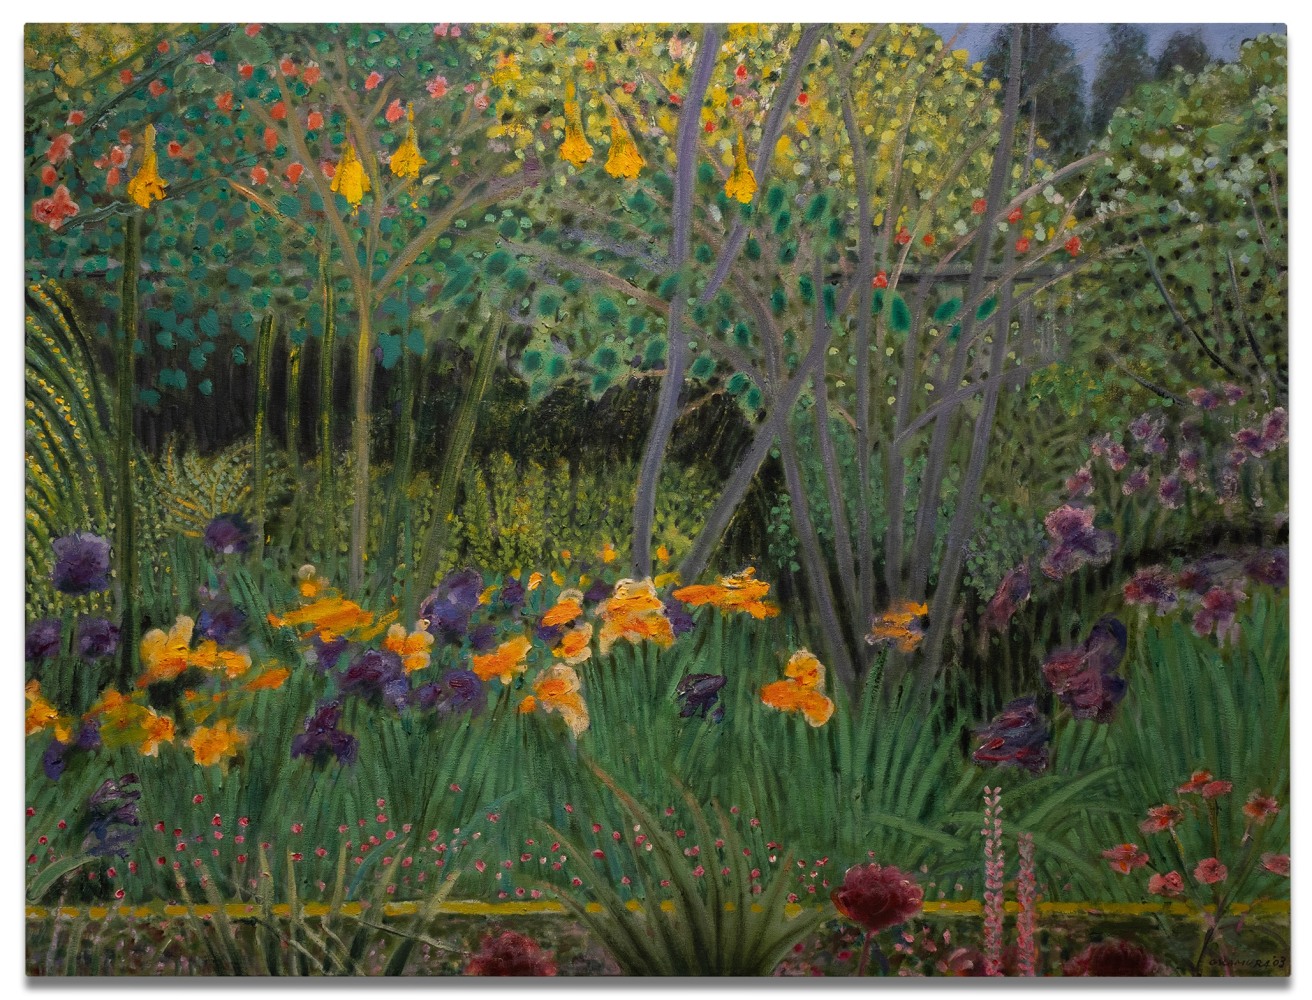 Arthur Okamura

Garden Patterns II, 2008

oil on canvas

30 x 40 in.